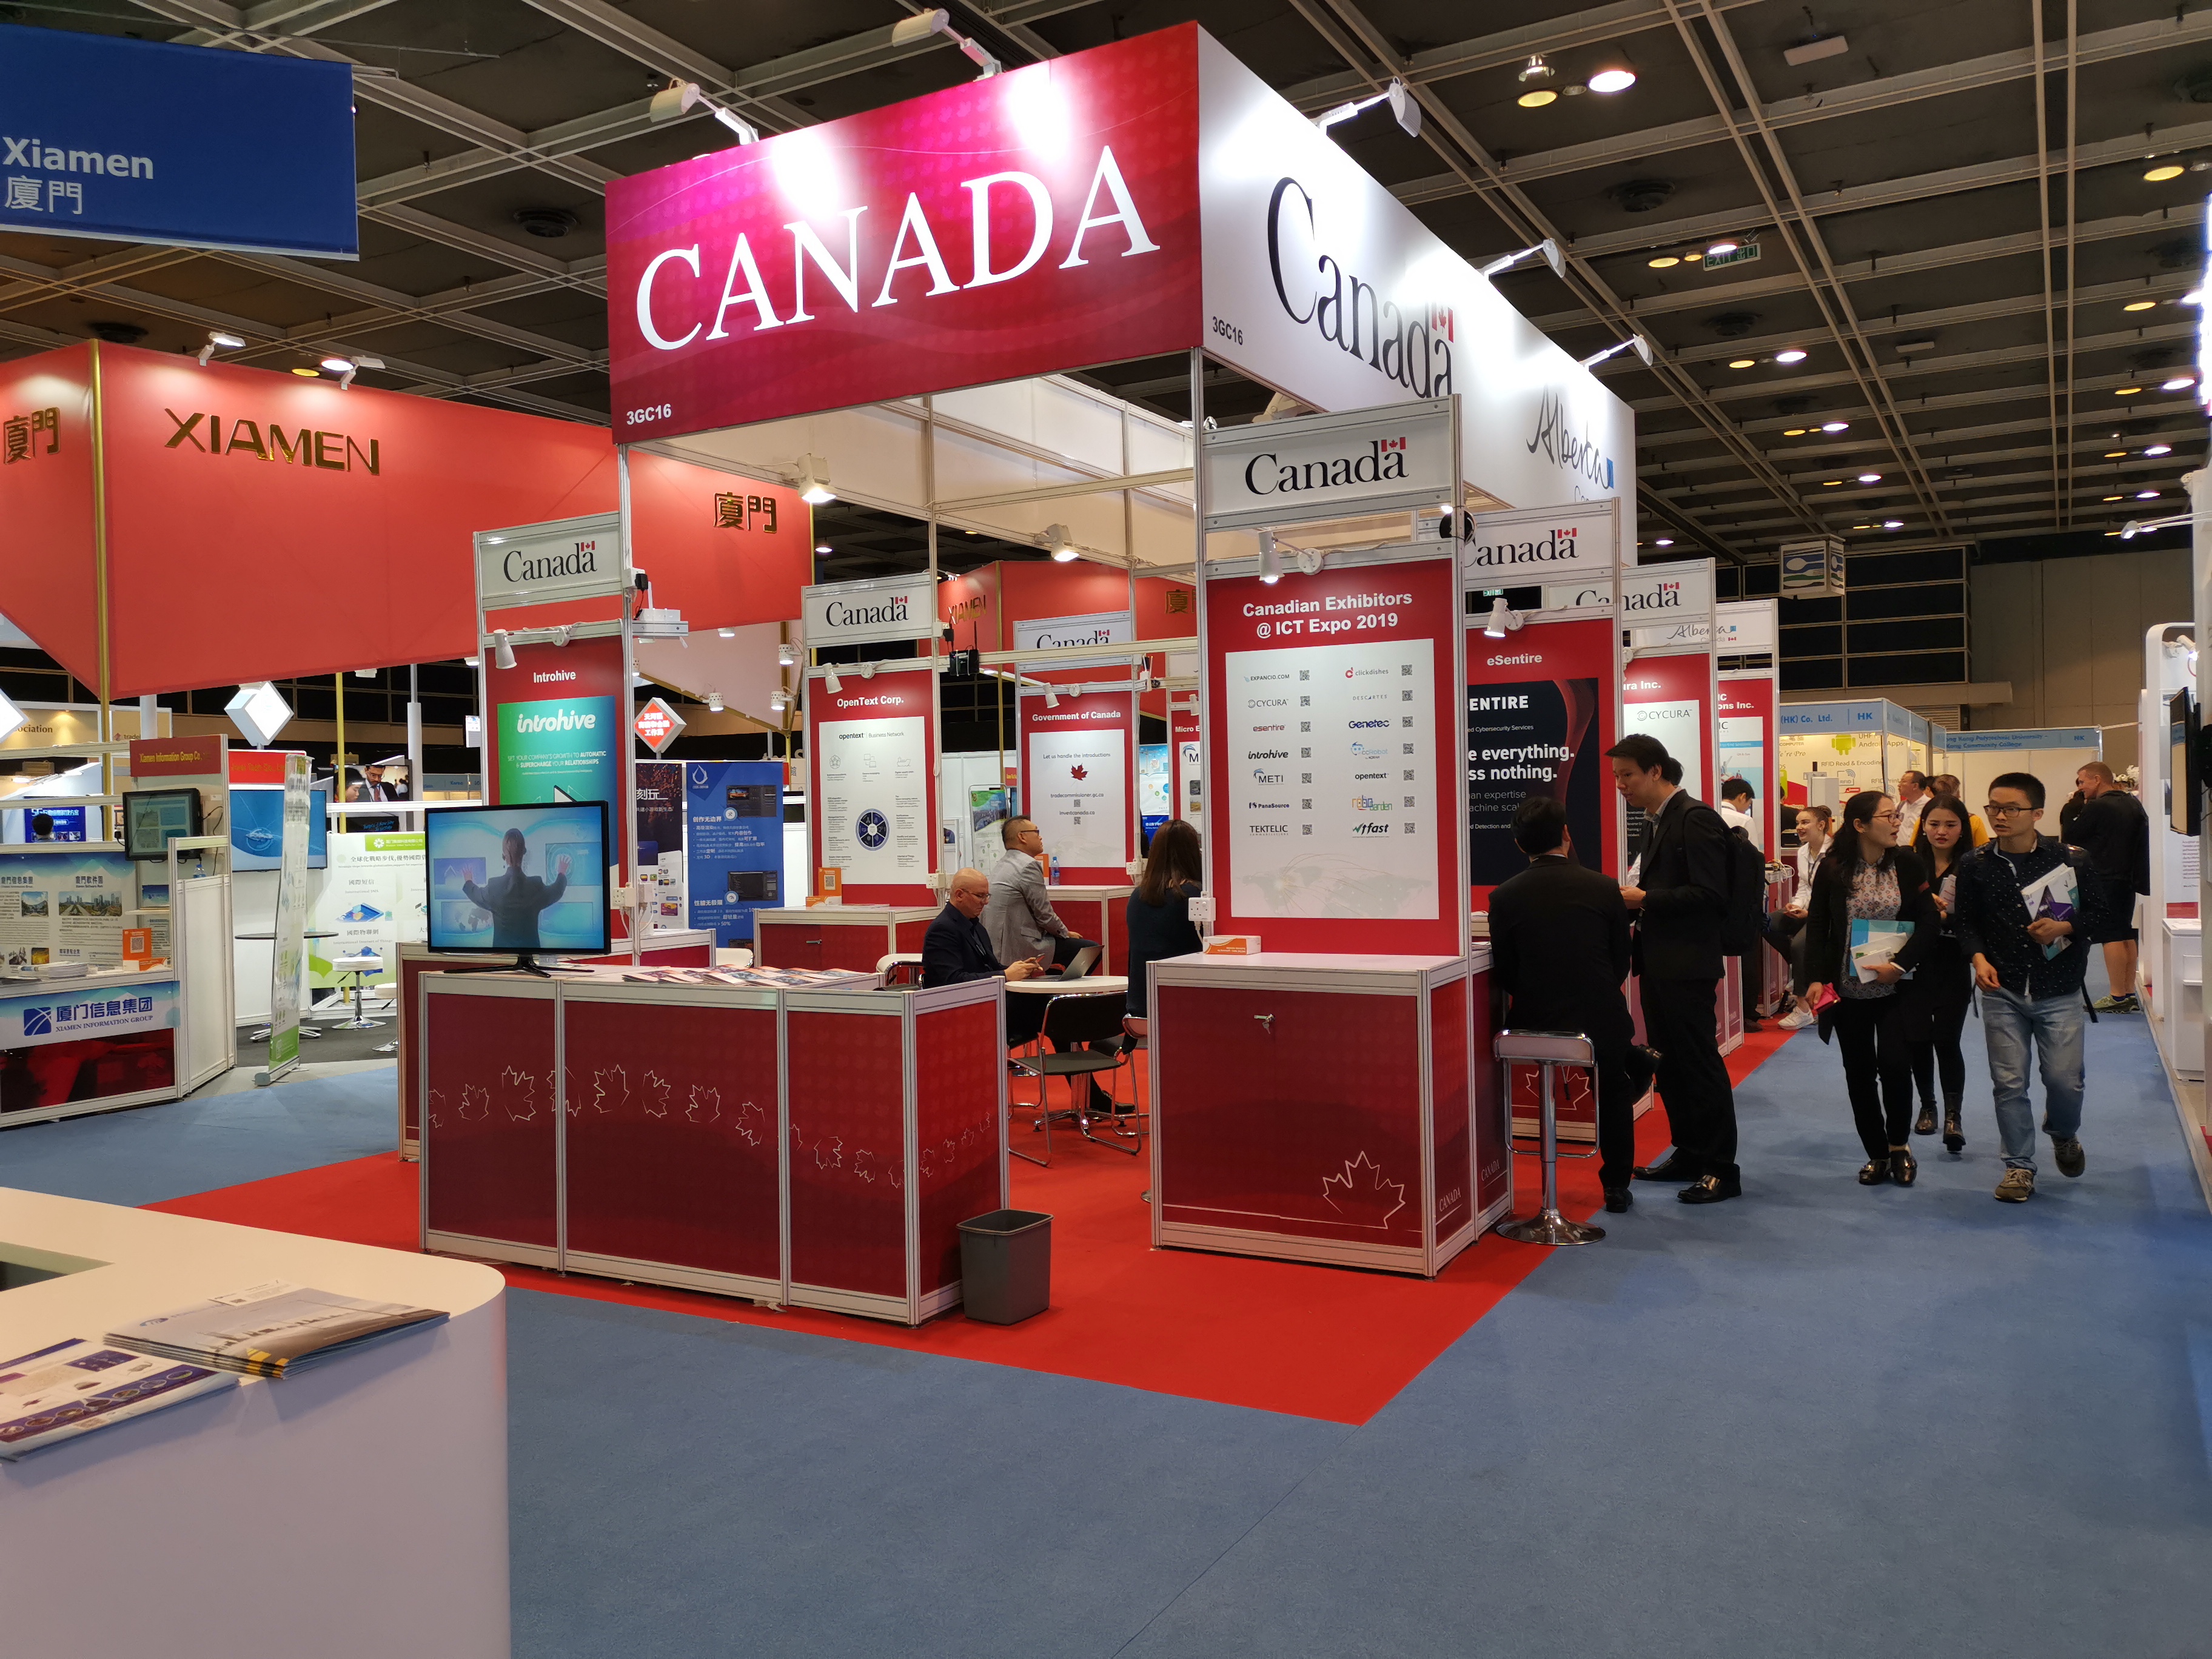 Canada booth at Hong Kong ICT Expo